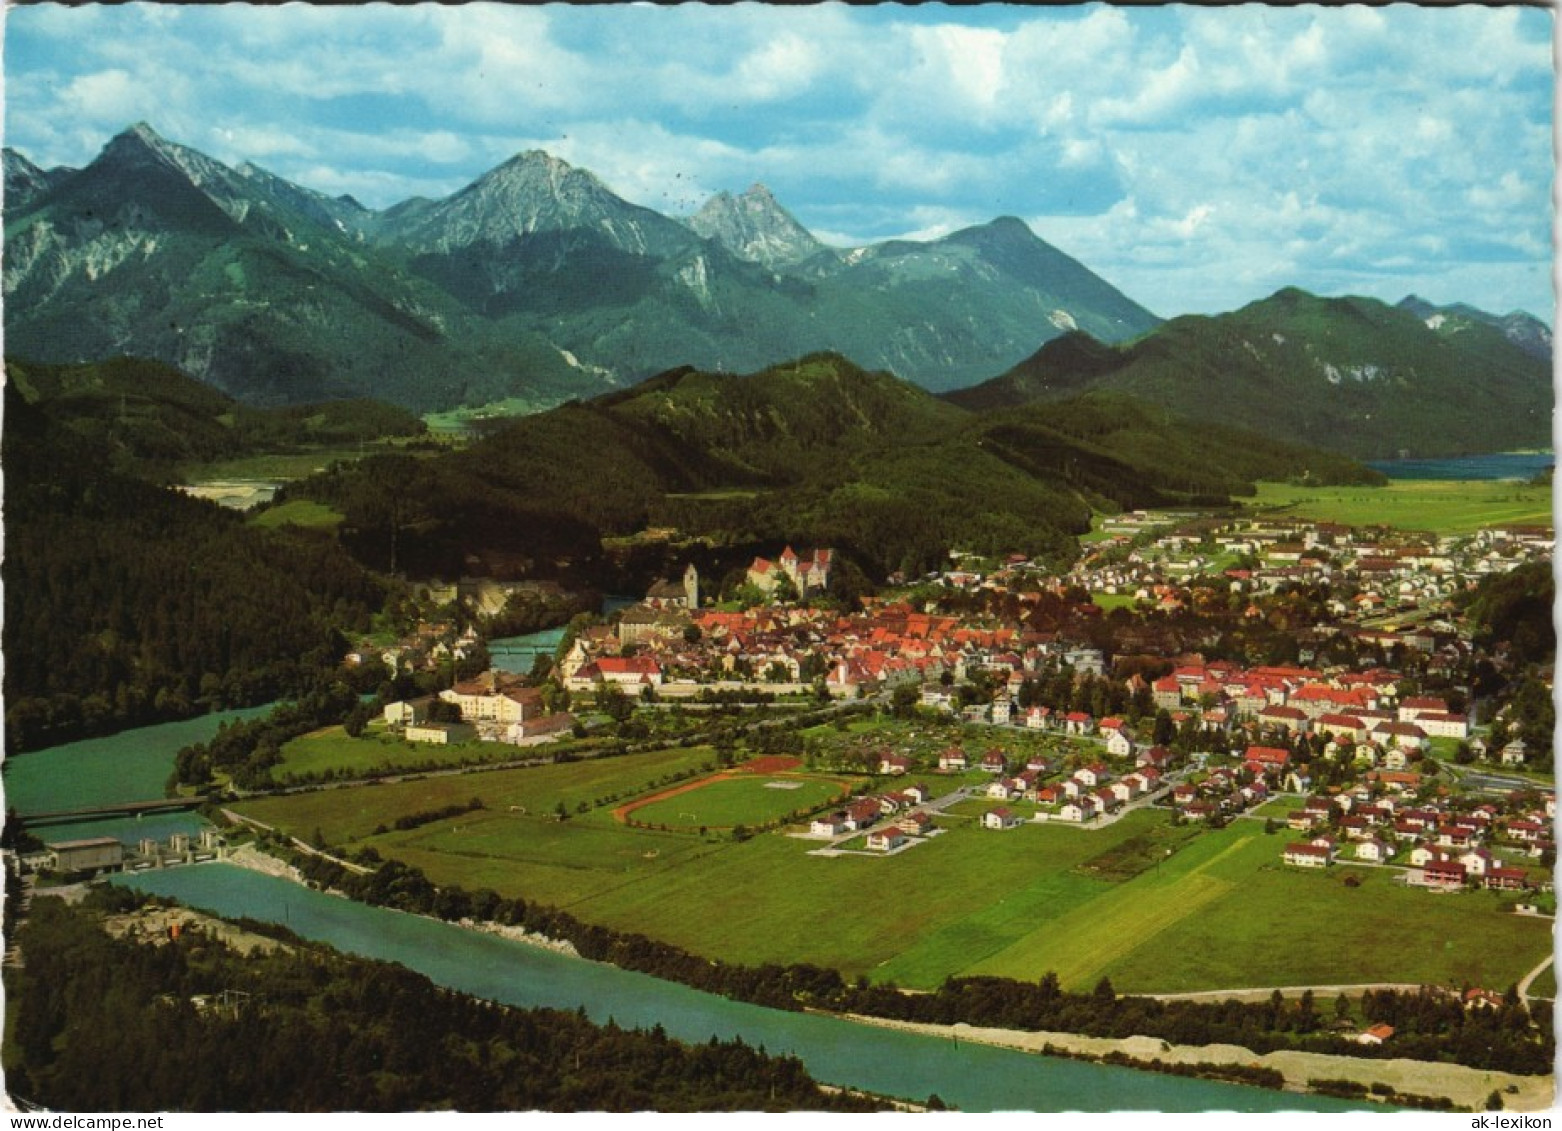 Ansichtskarte Füssen Panorama-Ansicht Mit Allgäuer Bergen 1976 - Fuessen